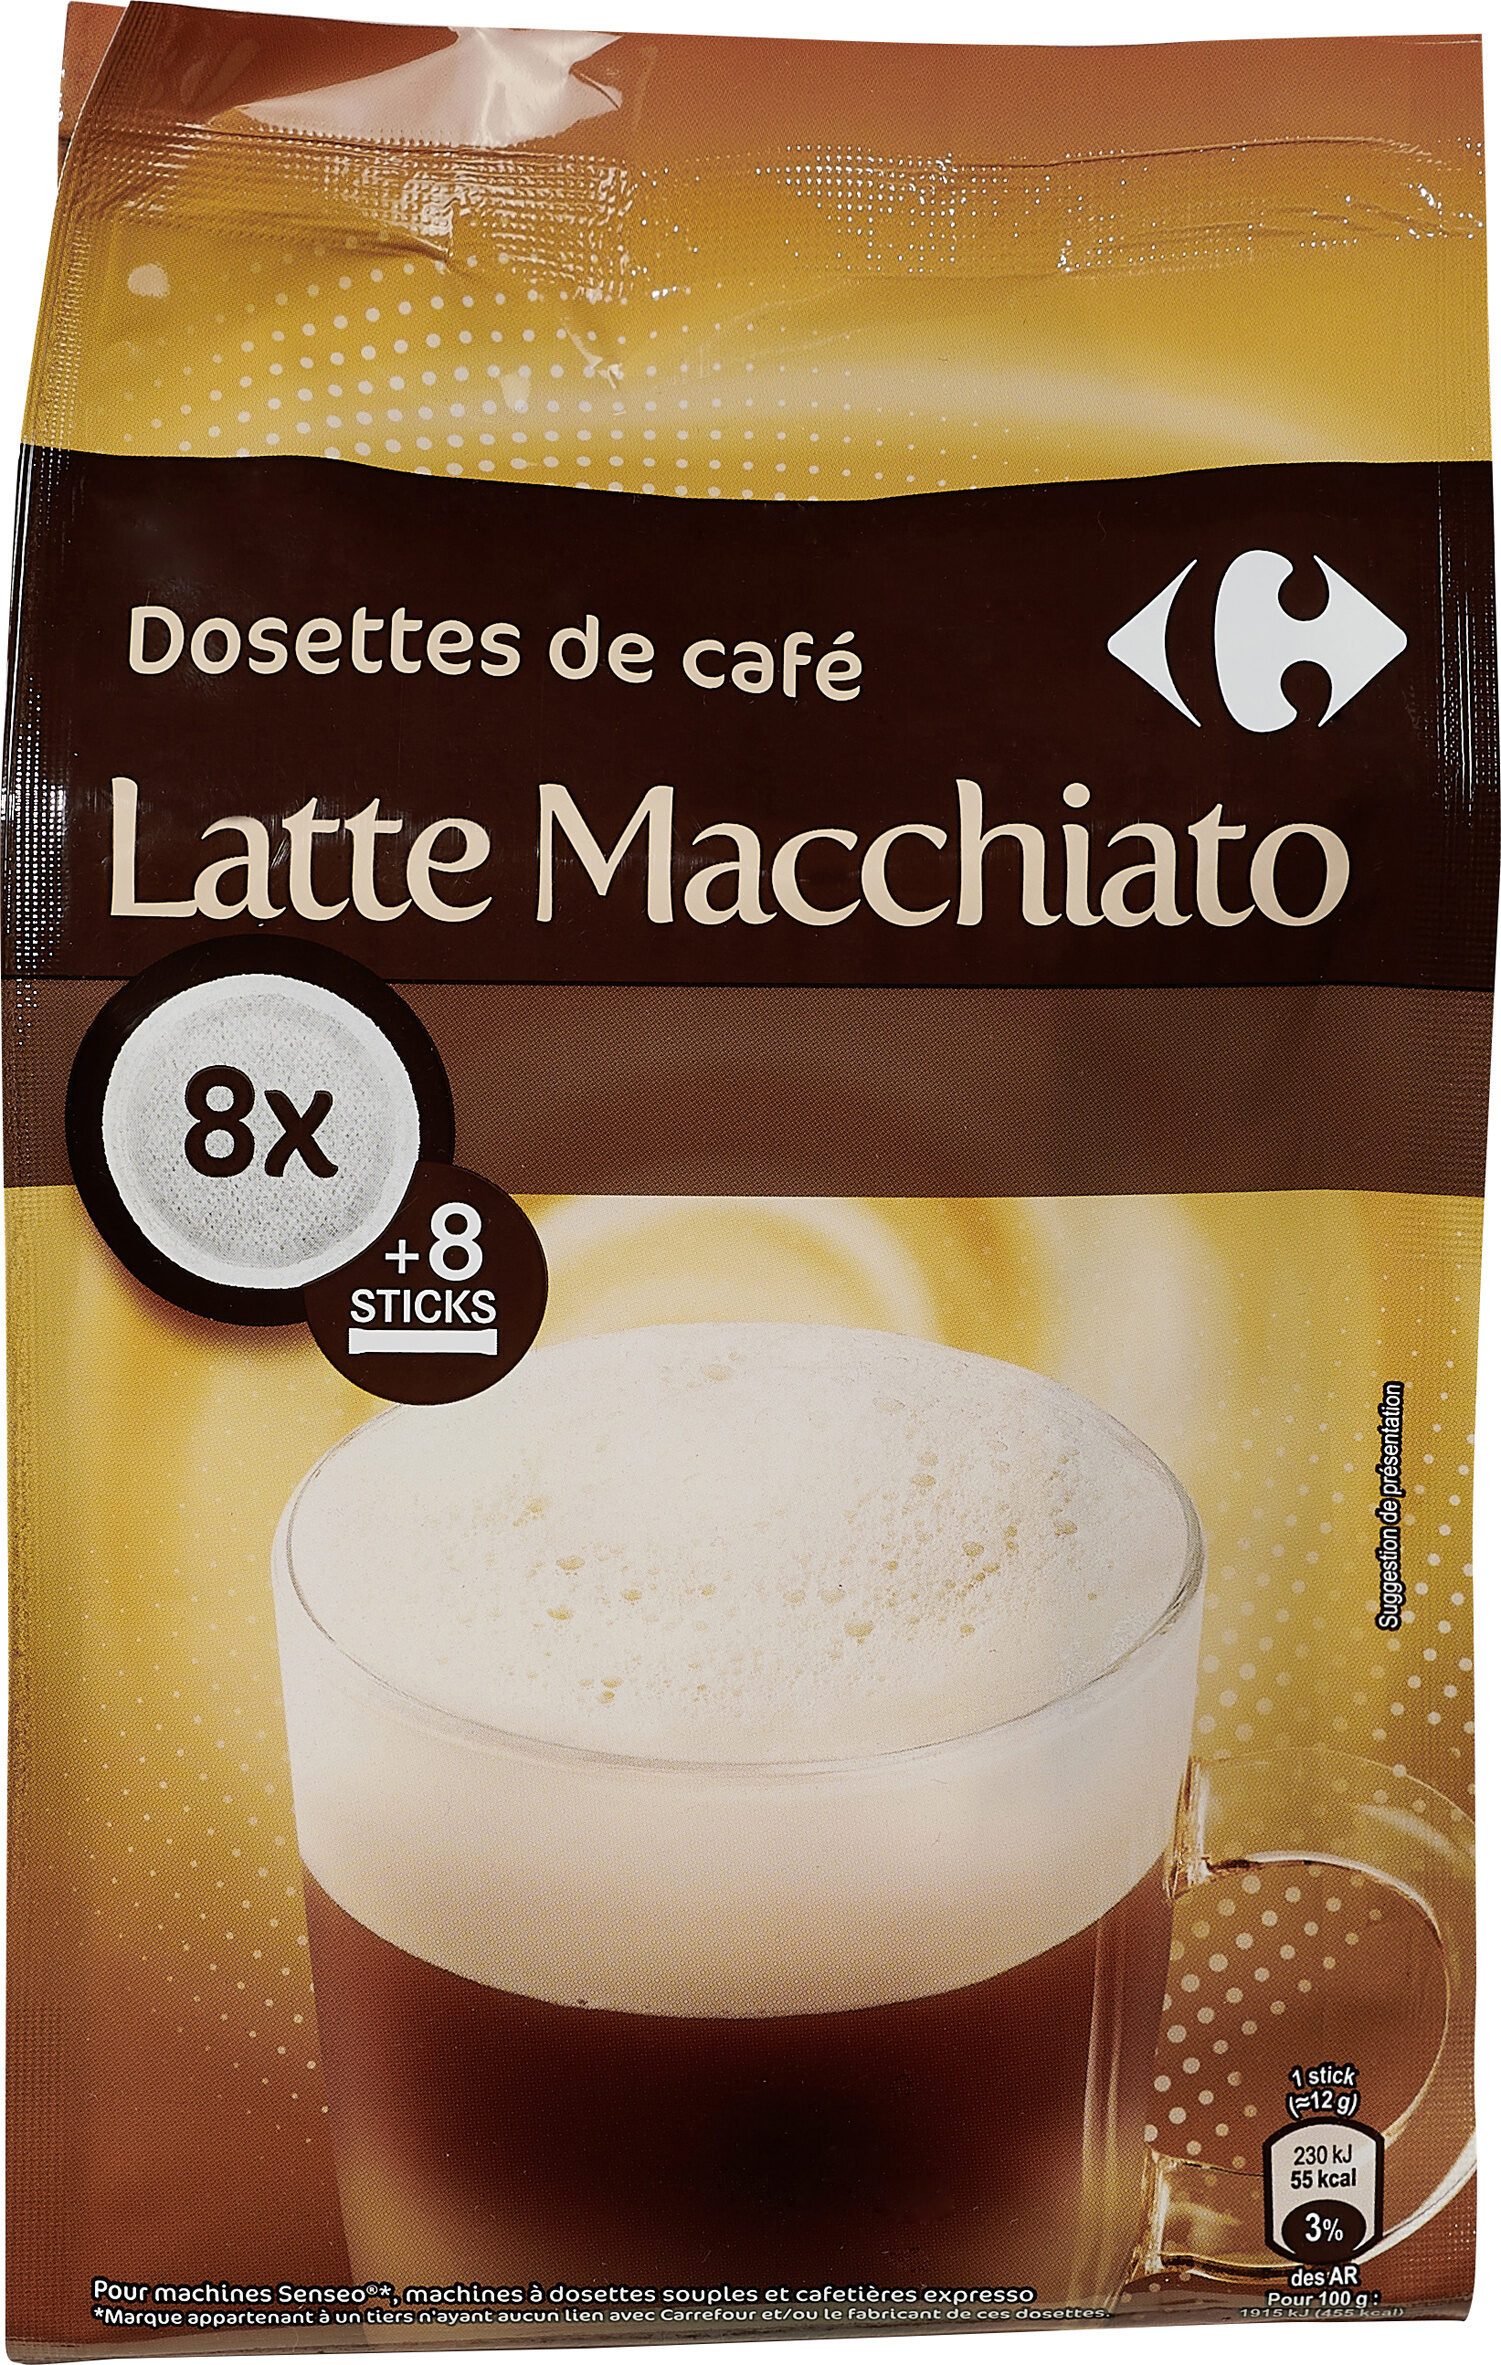 Dosettes de café Latte Macchiato - Product - fr